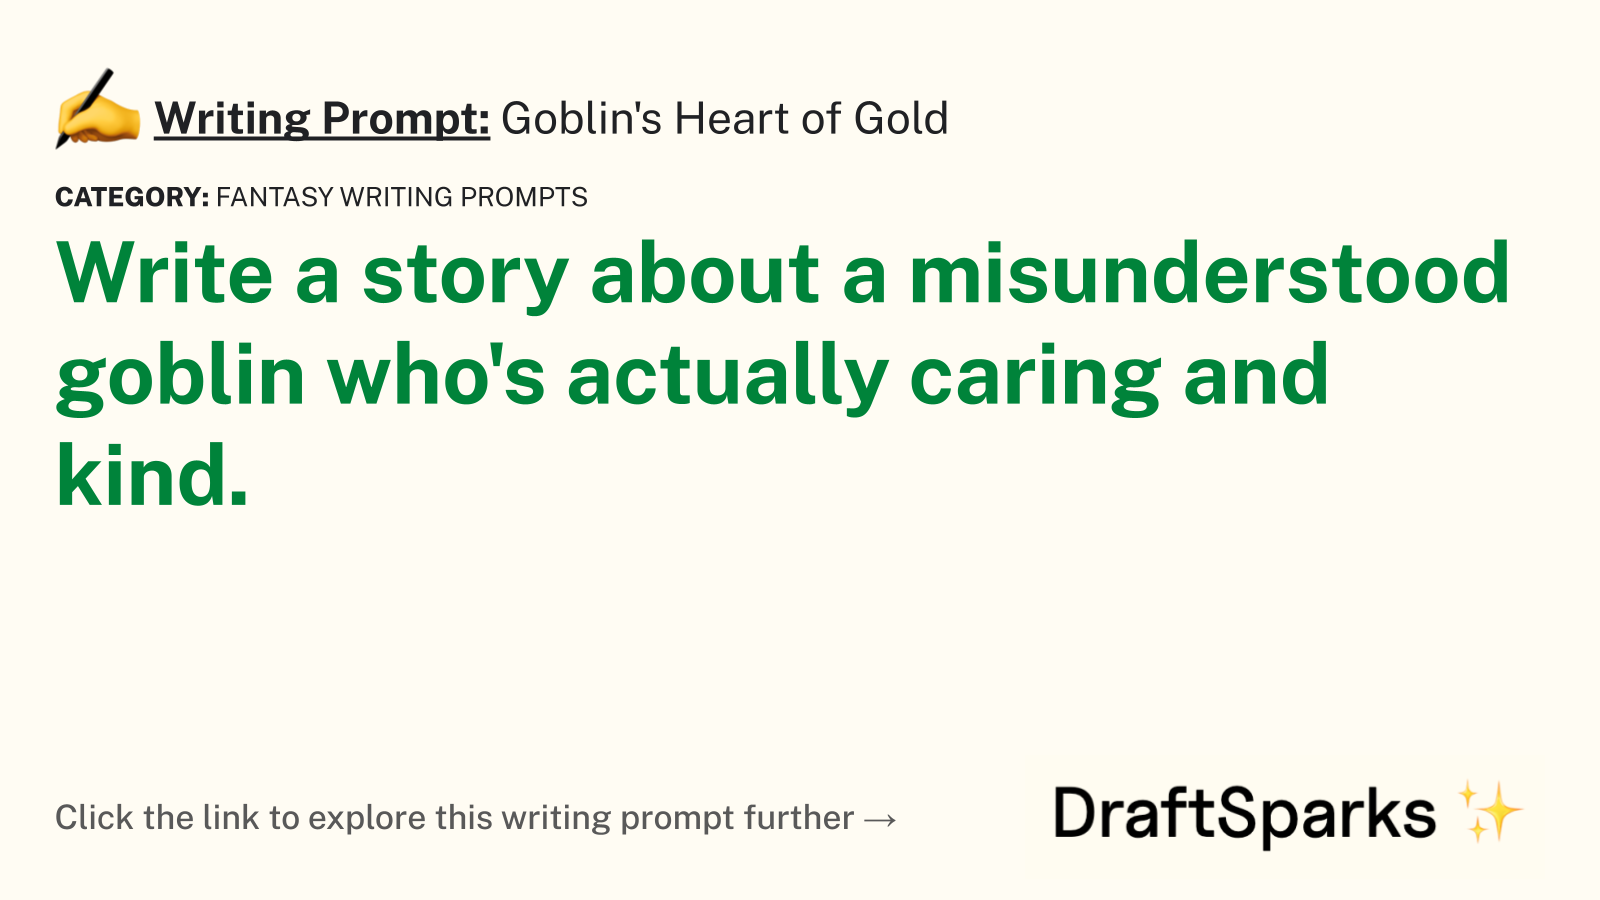 Goblin’s Heart of Gold